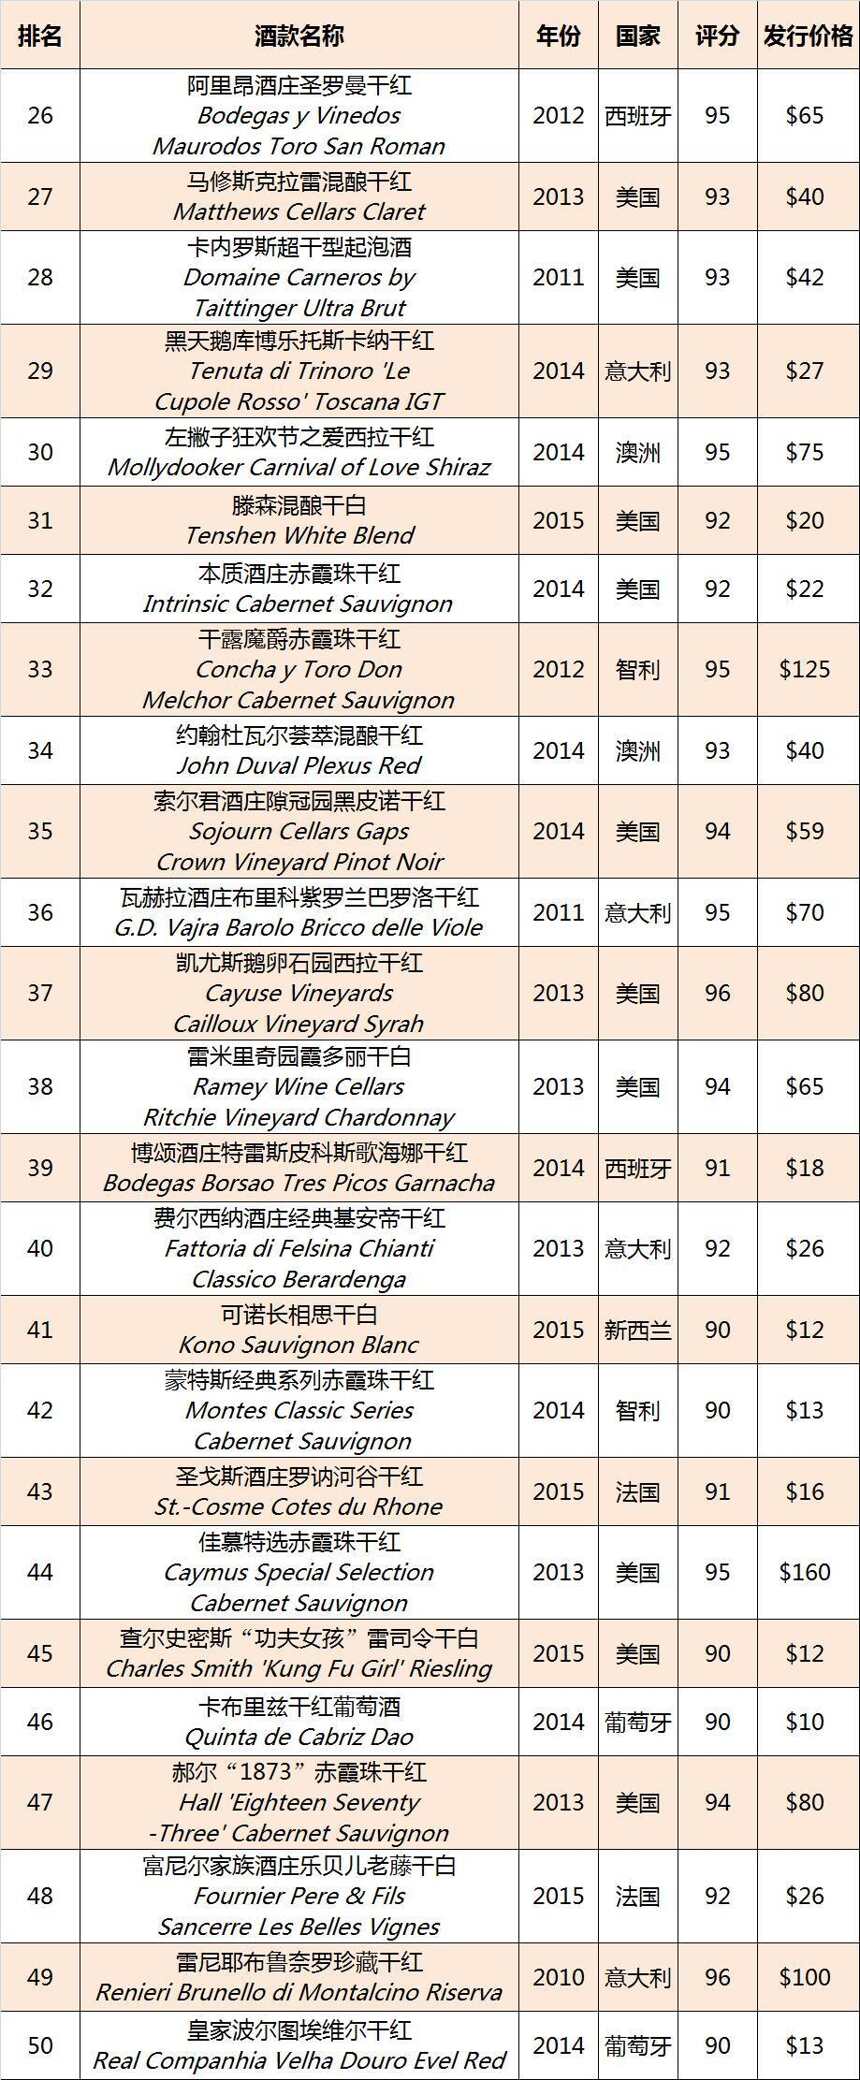 《葡萄酒观察家》2016 百大葡萄酒完整榜单新鲜出炉